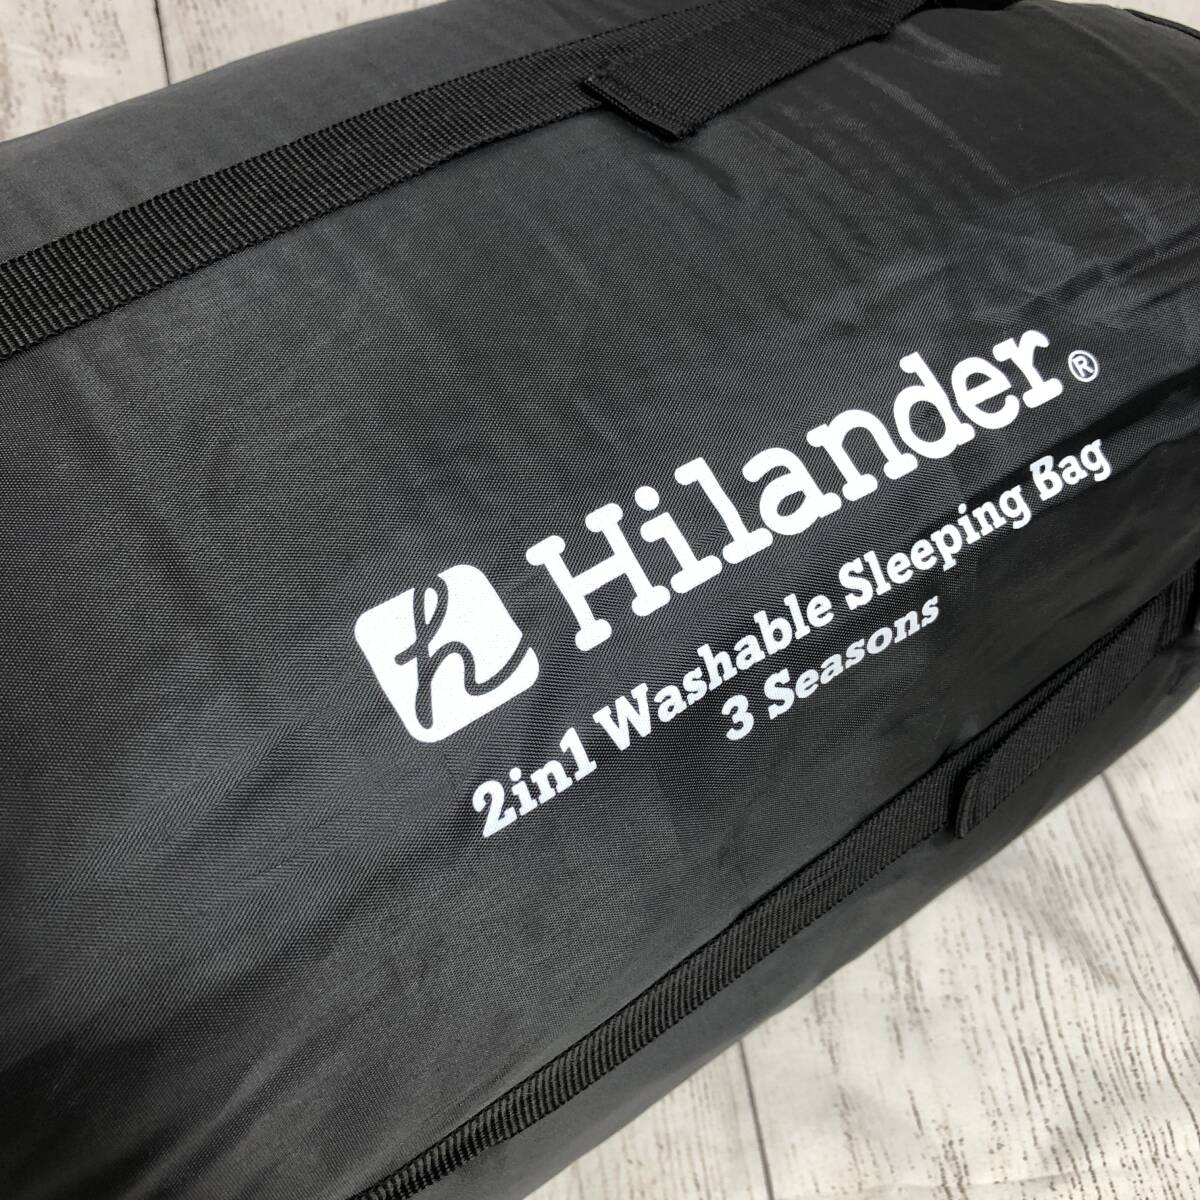 [ новый товар нераспечатанный ]Hilander( Highlander ) 2in1...3 season спальный мешок (5*C&15*C соответствует ) 3 season спальный мешок UK-7 /Y20904-K3